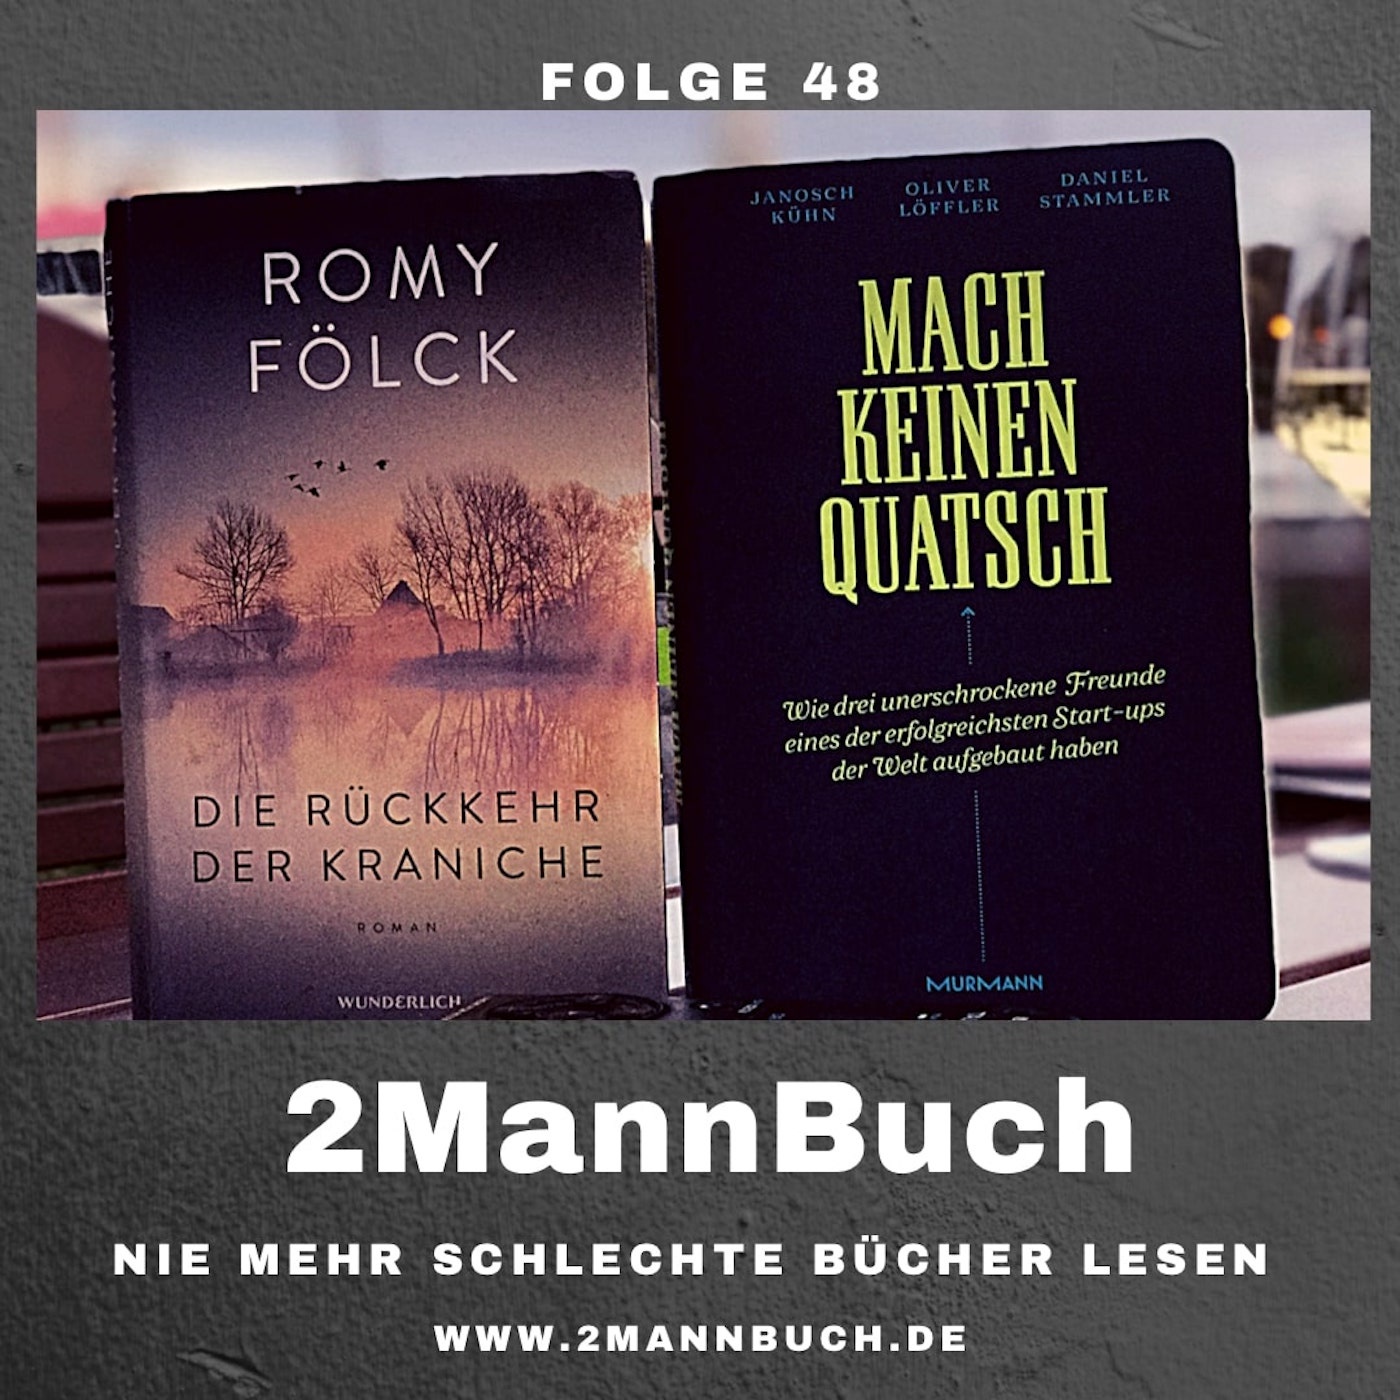 Folge 48 mit Romy Fölck und Kühn/Löffler/Stammler